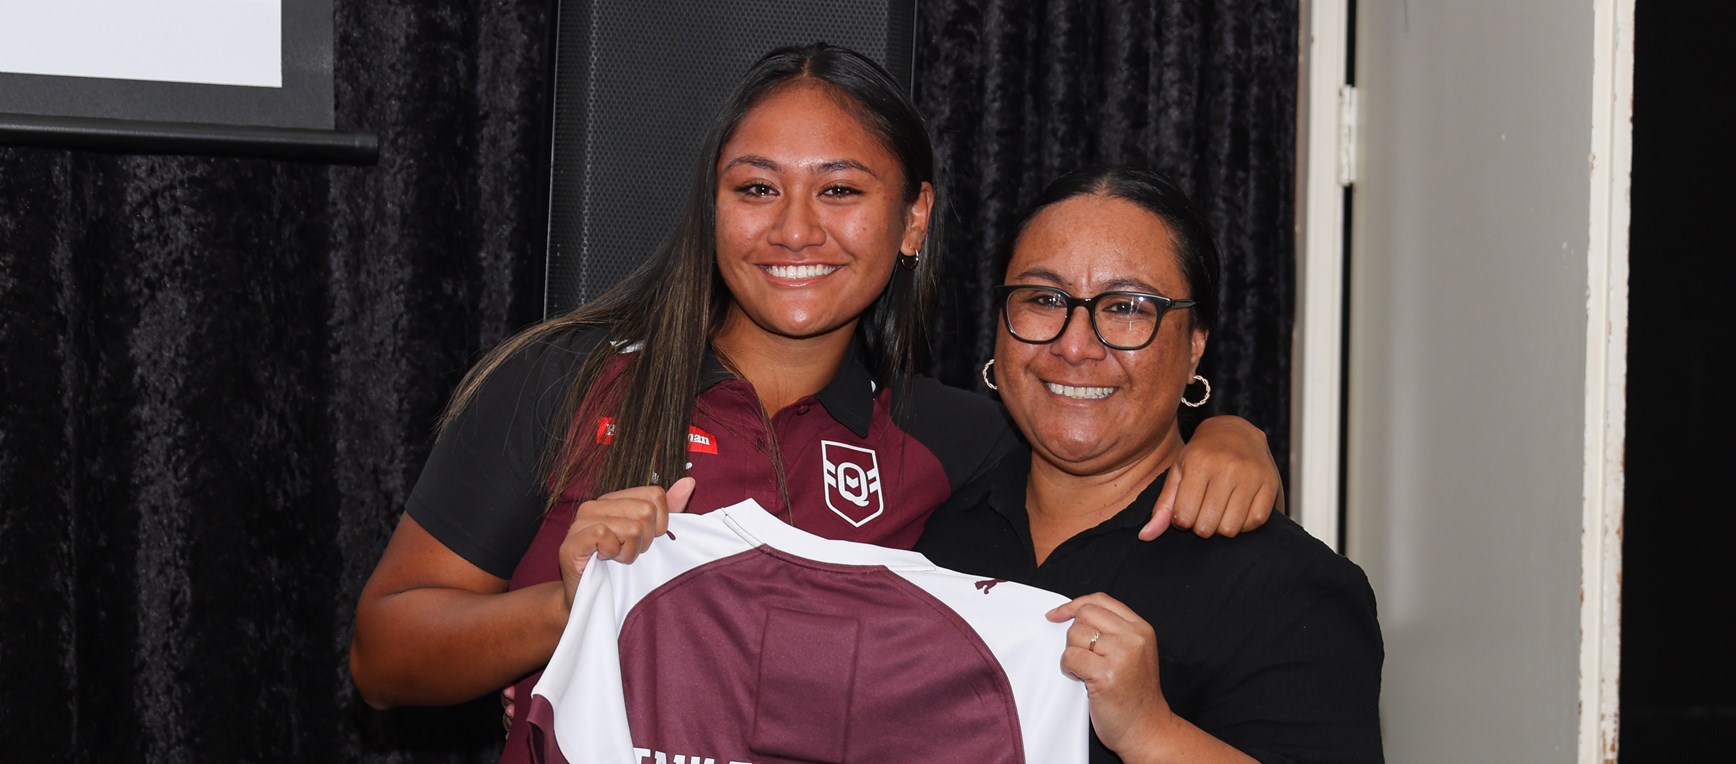 In pictures: Queensland Under 19 girls jersey presentation